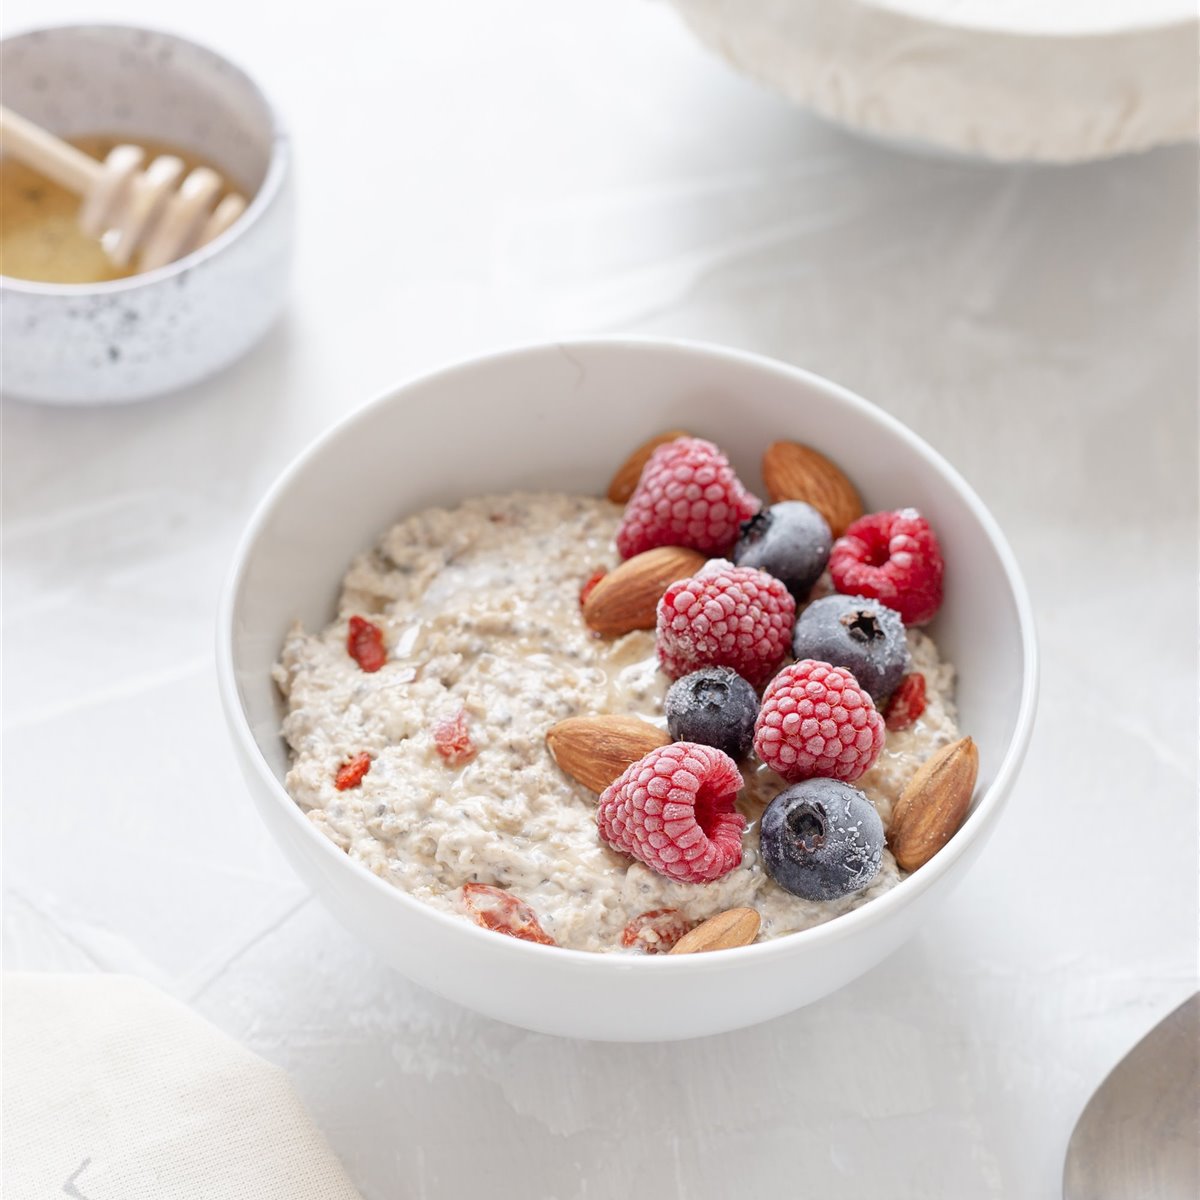 Porridge con frutos rojos